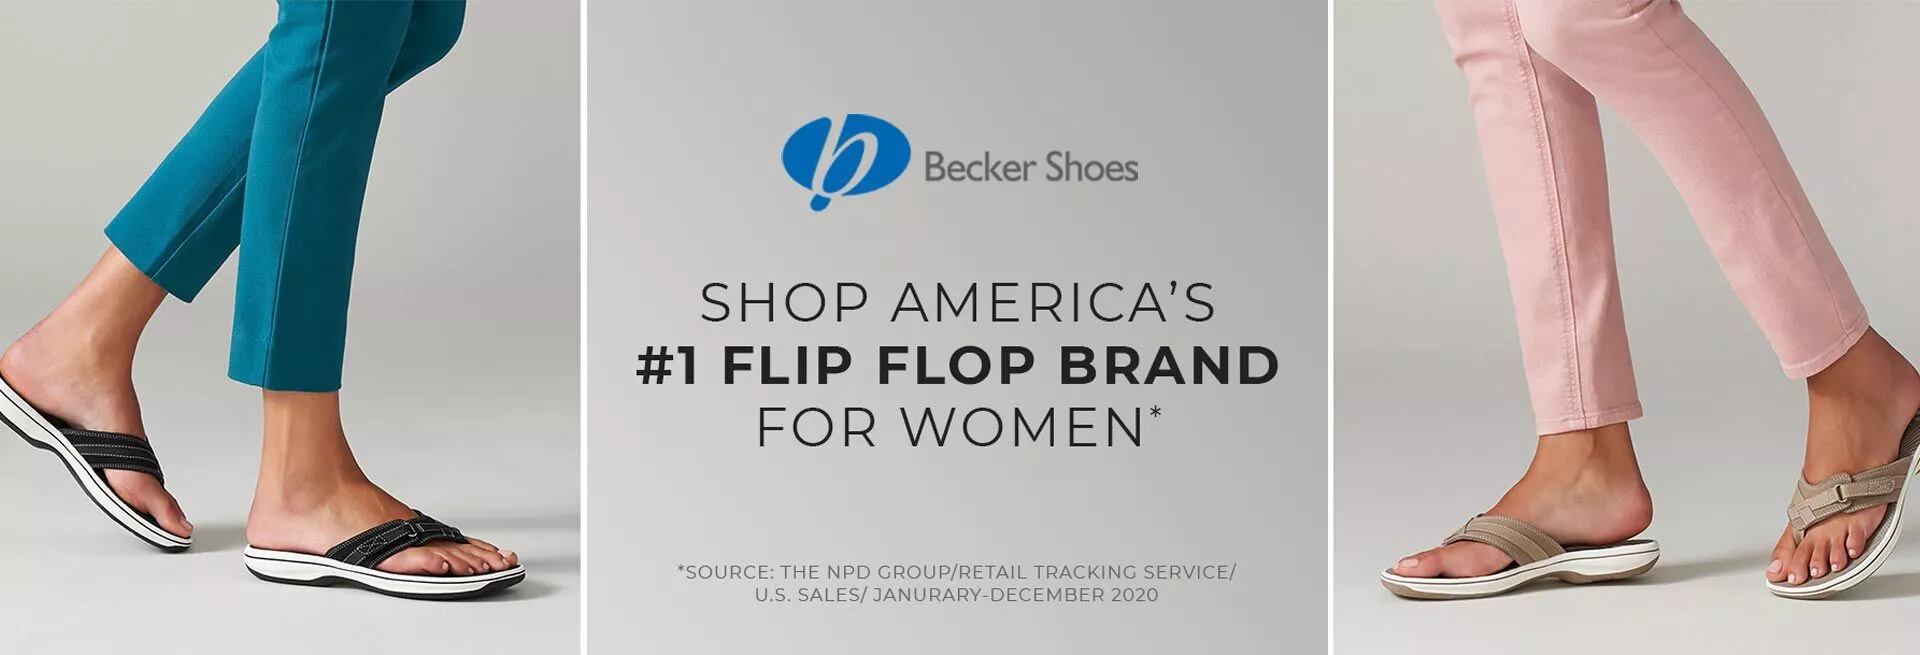 Becker-Shoes-Banner1